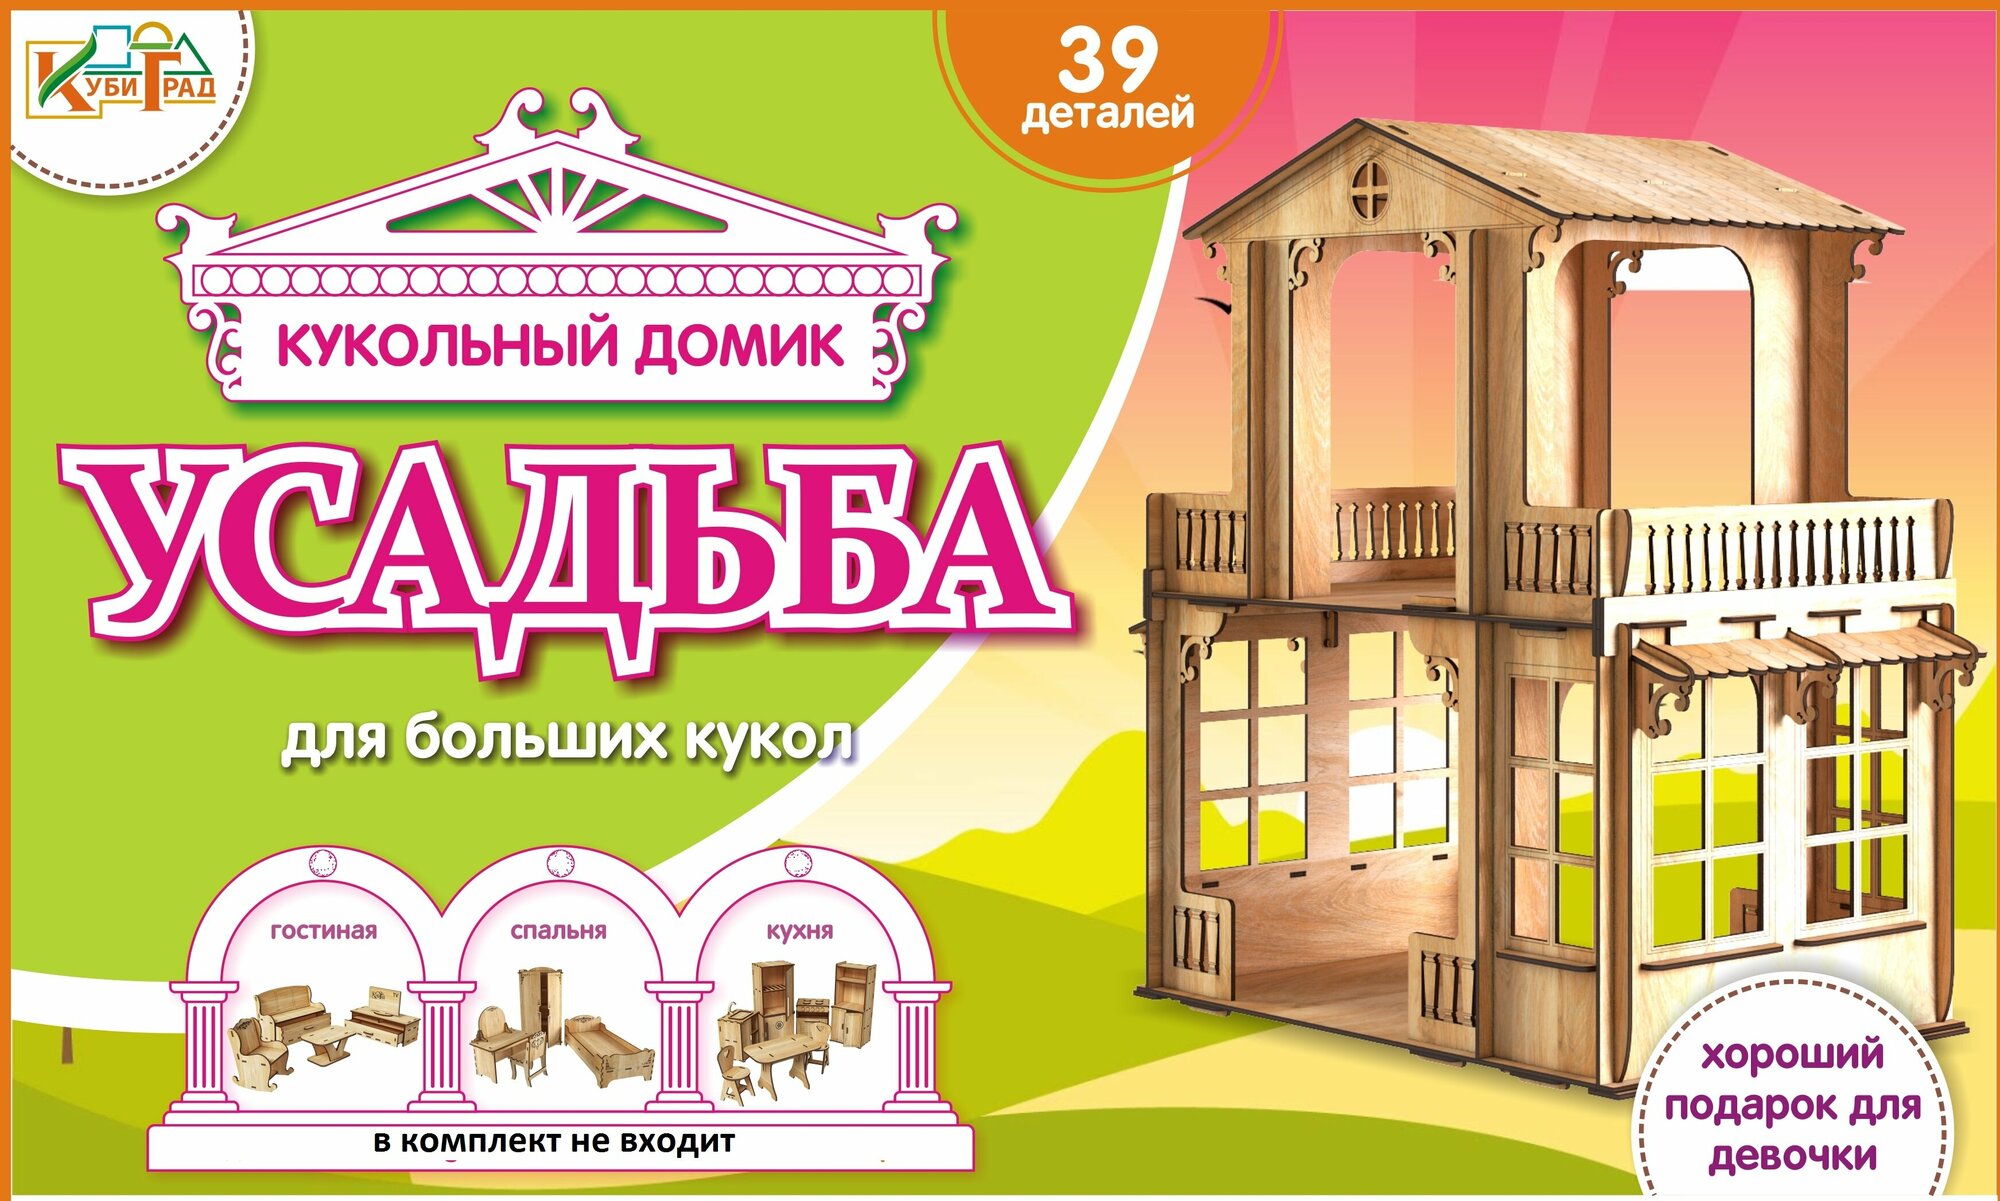 Кукольный домик высотой 69 см. "Усадьба" для кукол до 30 см